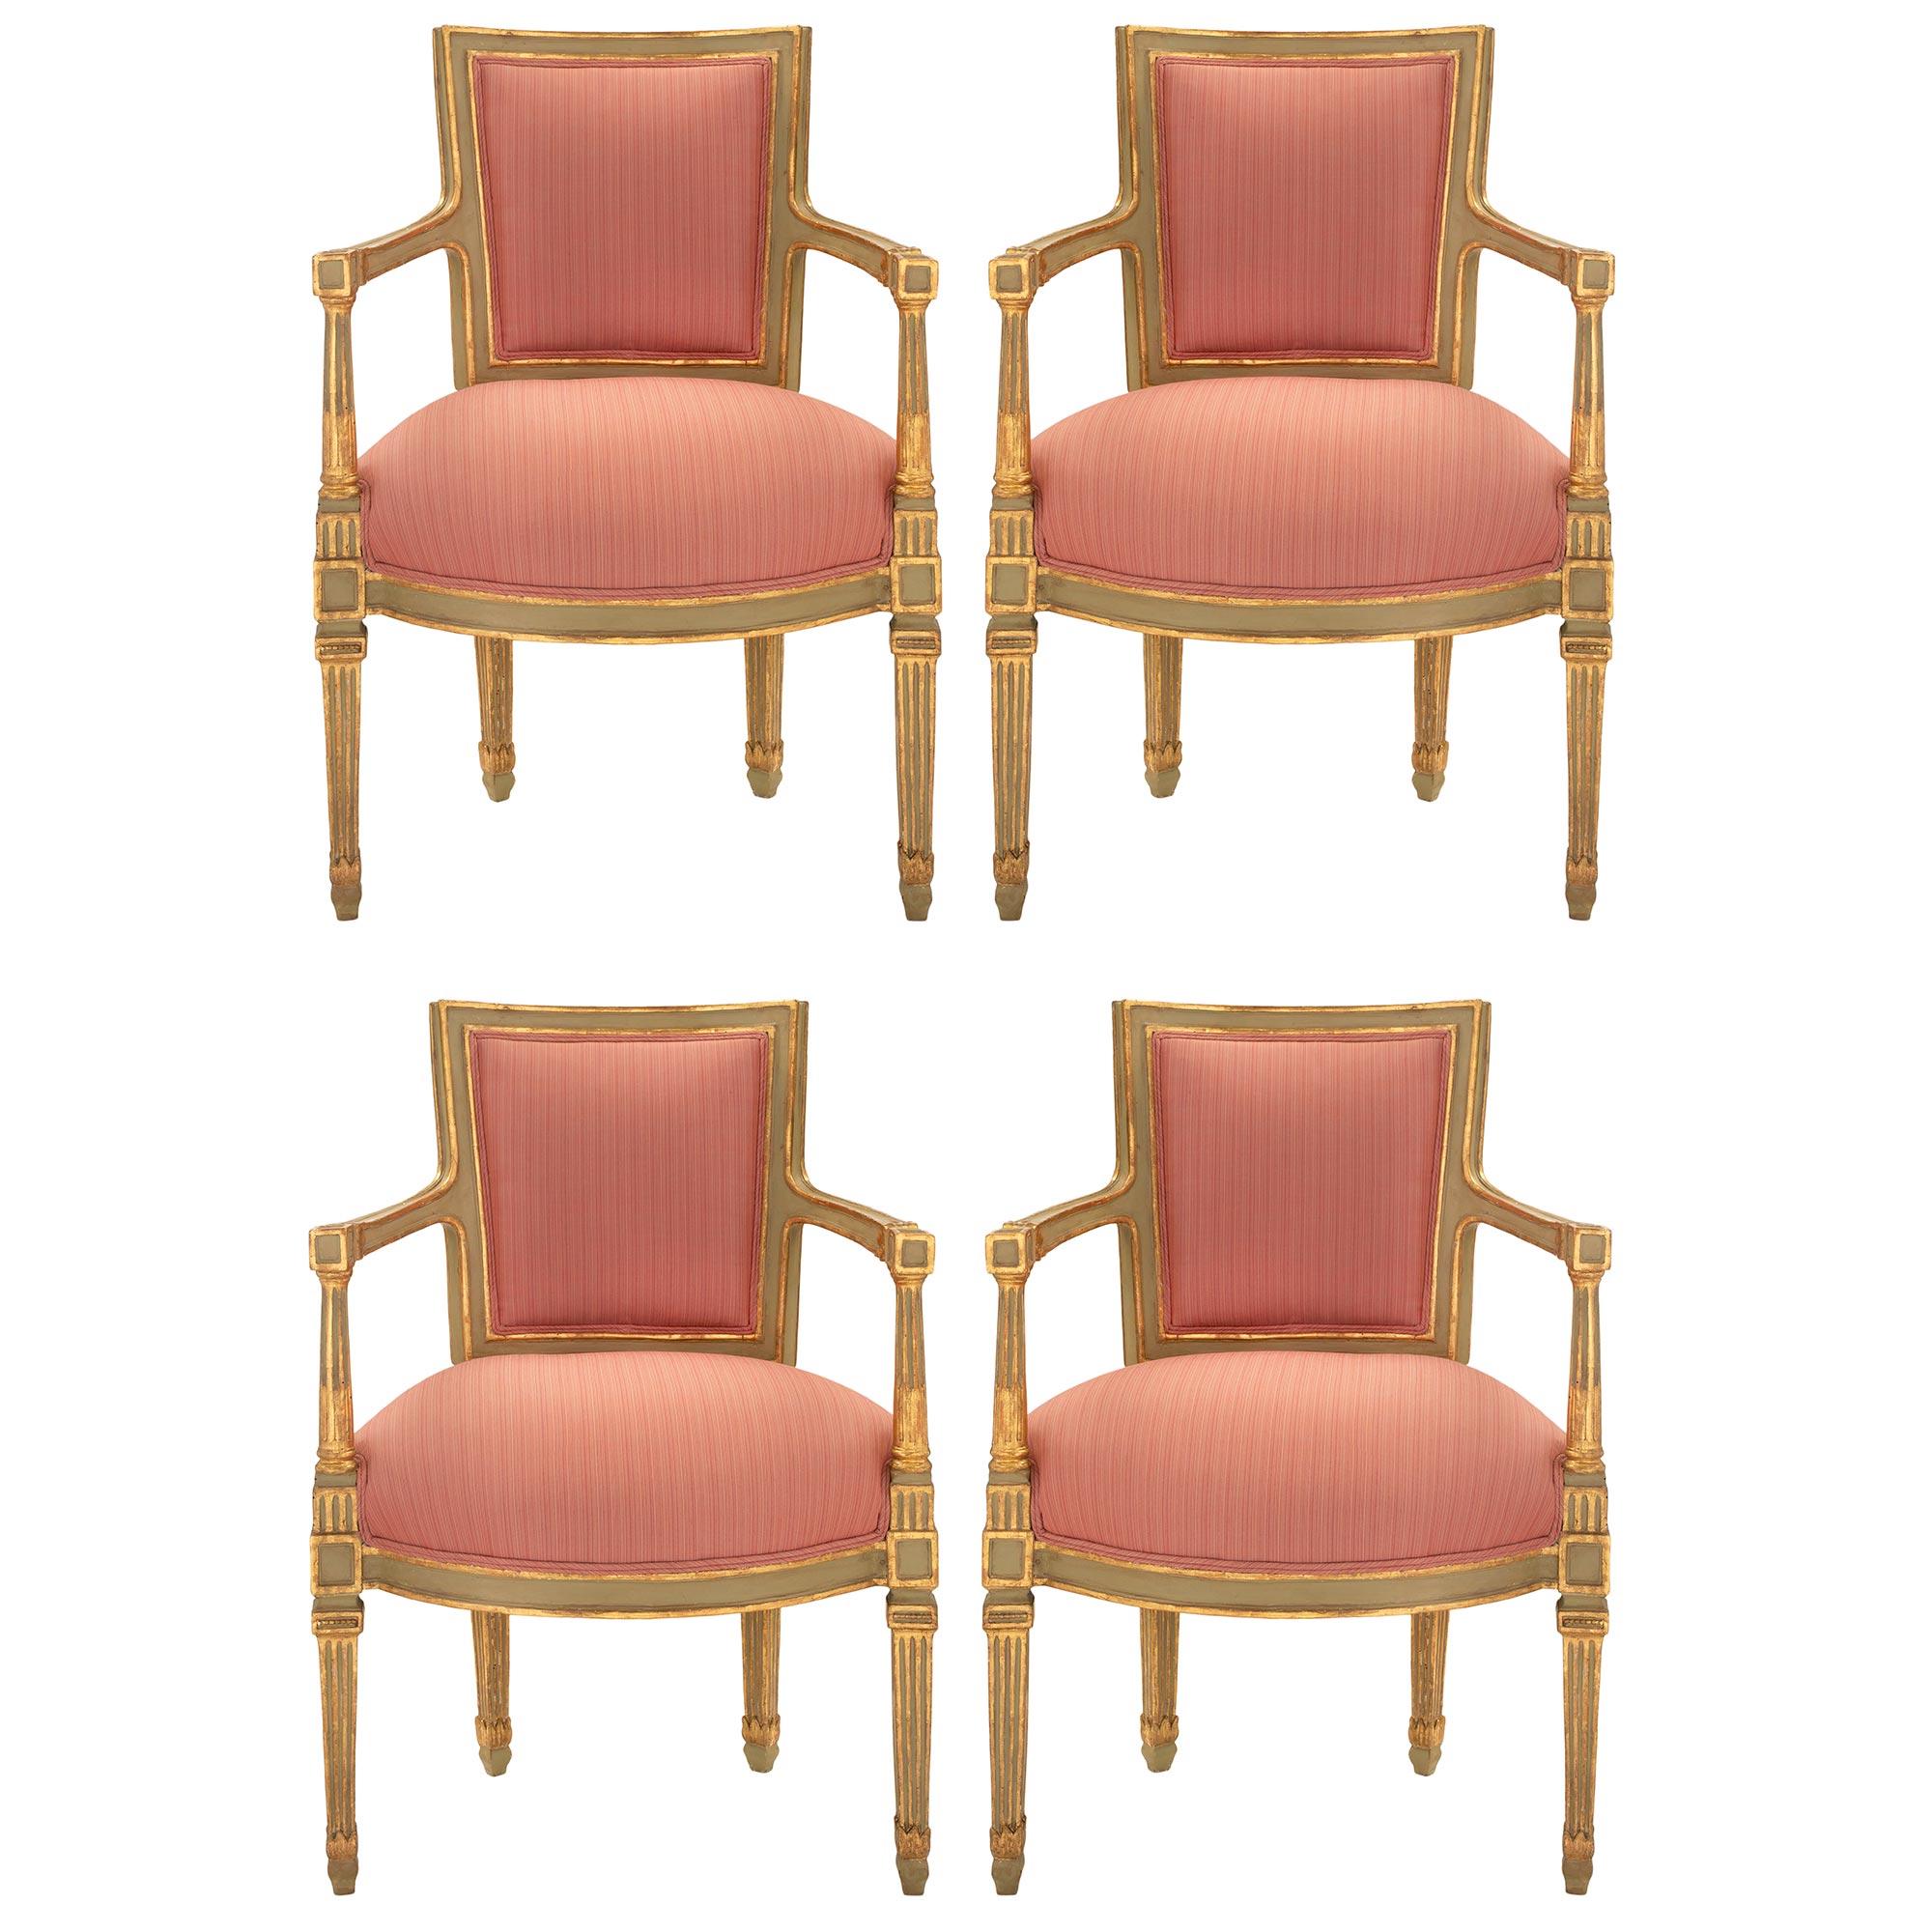 Eine auffällige und vollständige Reihe von vier patinierten und vergoldeten Sesseln aus Neapel aus der Zeit Ludwigs XVI. Jedes steht auf eleganten, quadratischen, konischen, kannelierten Beinen aus vergoldetem und patiniertem Holz. Über jedem Bein